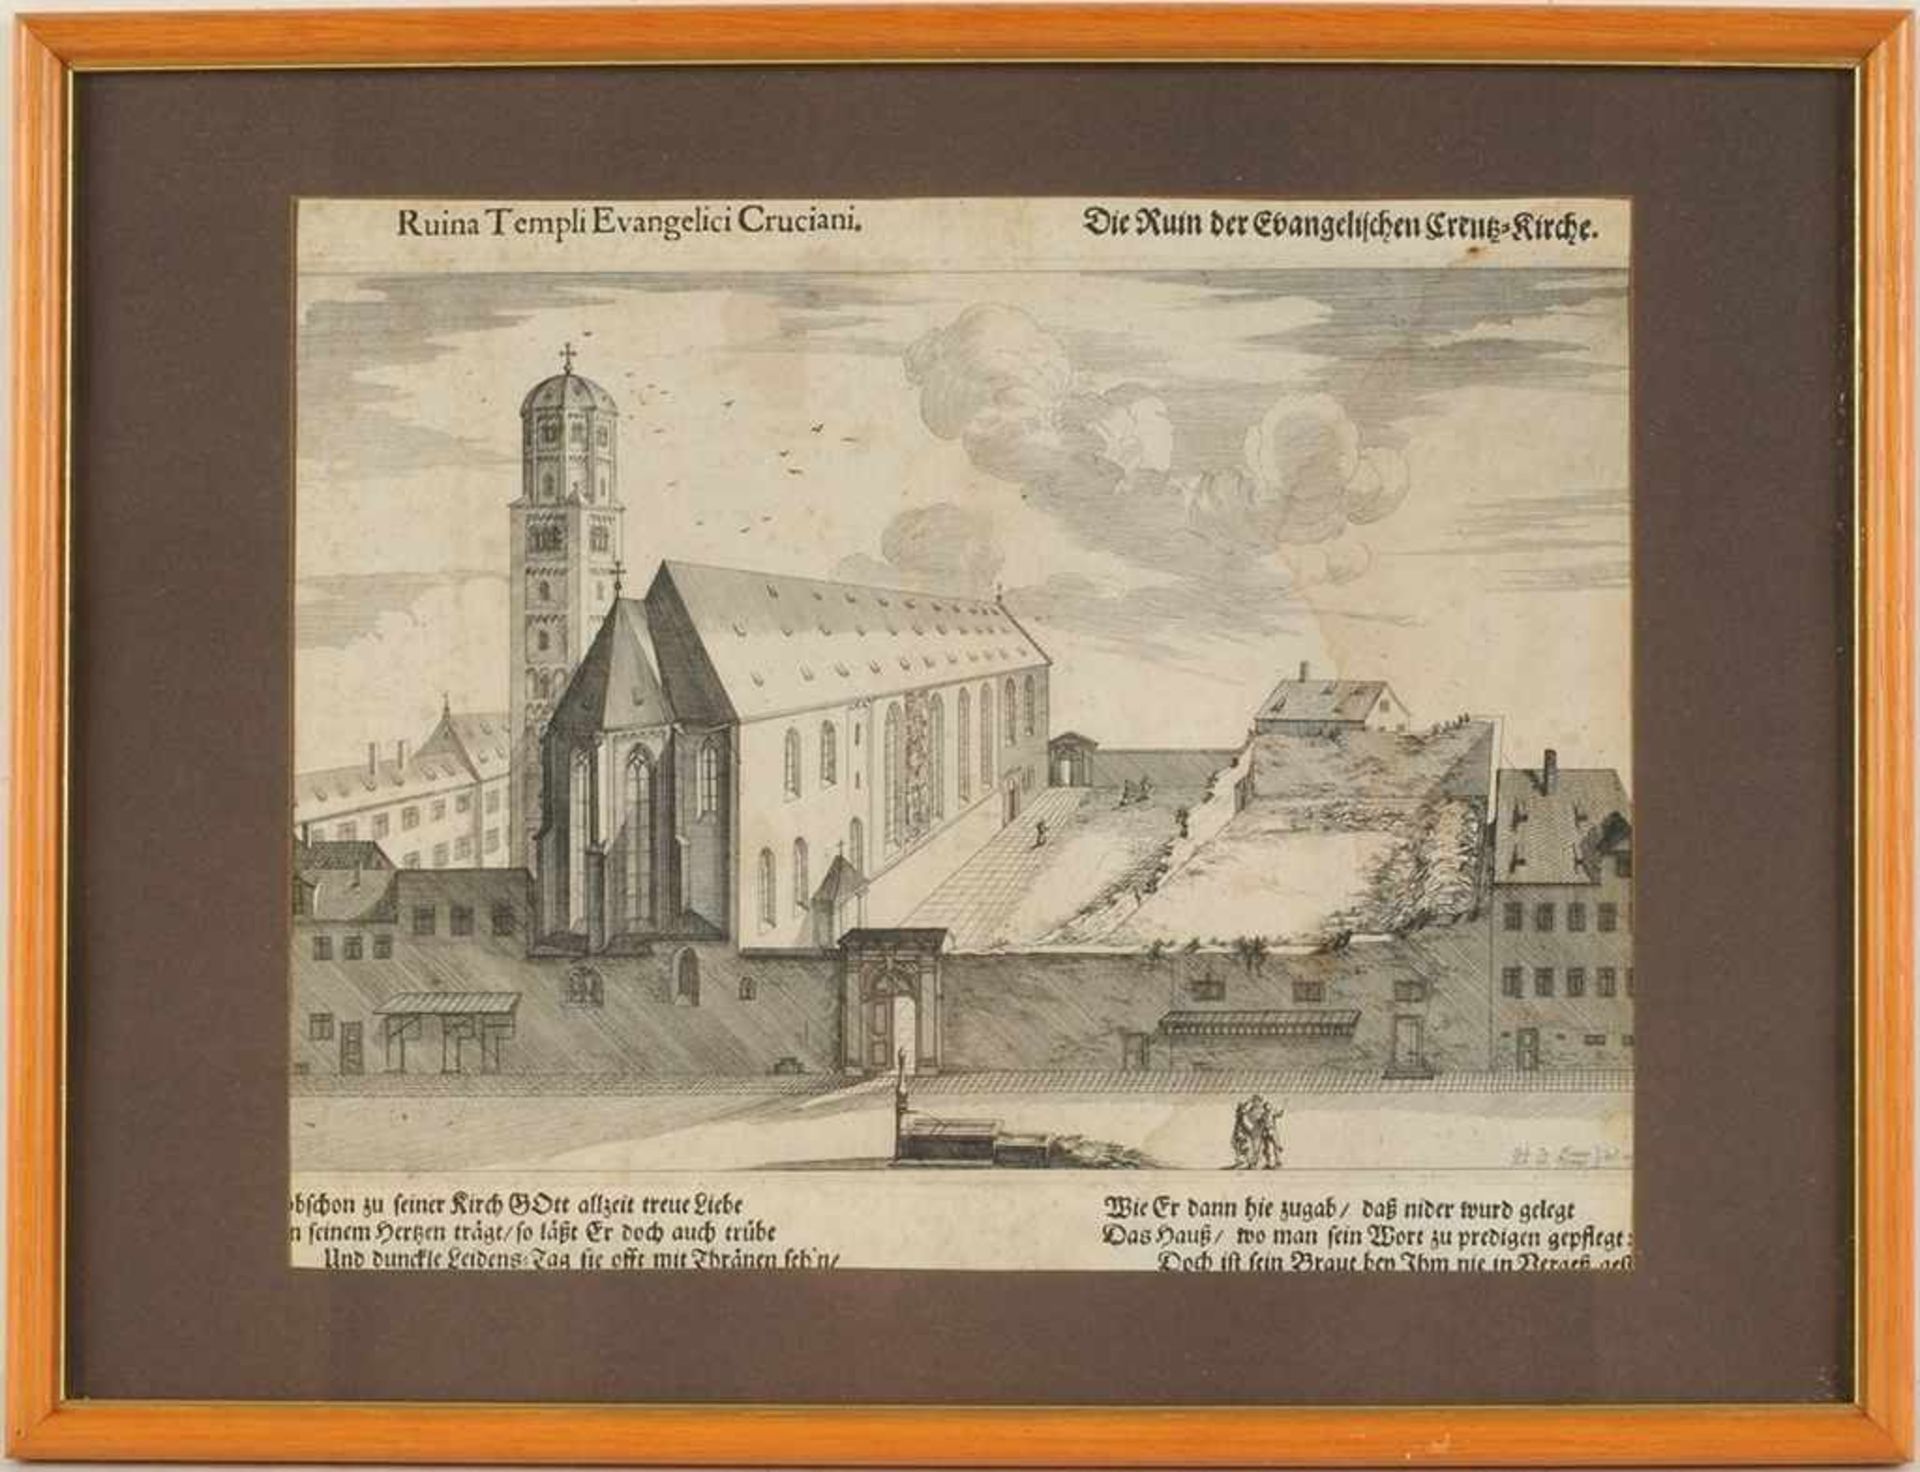 Ansicht AugsburgRadierung. "Die Ruin der Evangelischen Creutz-Kirche.", Blick auf das Kloster Heilig